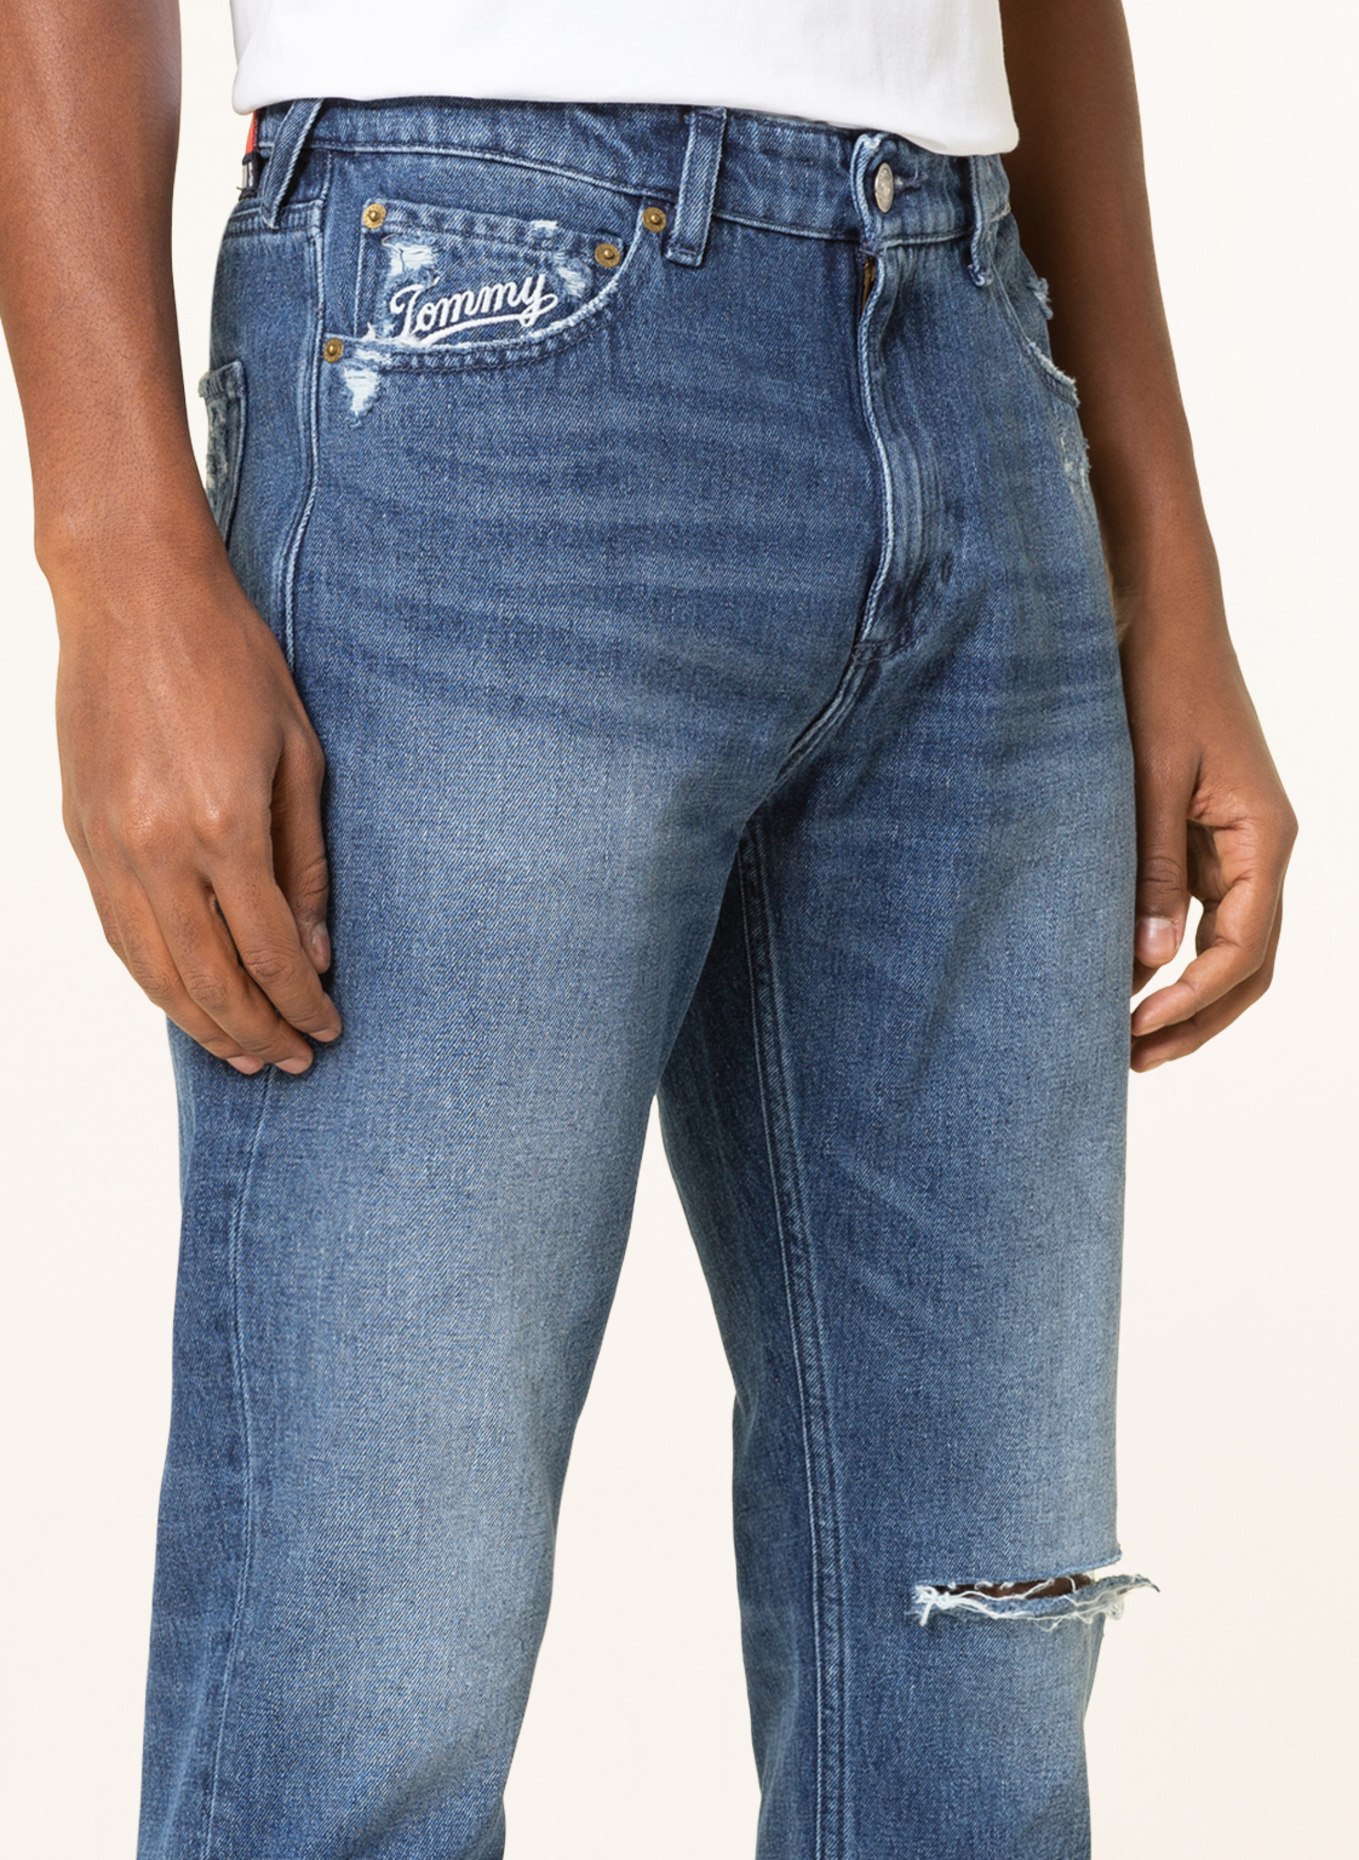 TOMMY JEANS Destroyed jeans SCANTON slim fit, Color: 1A5 Denim Medium 02 (Image 5)